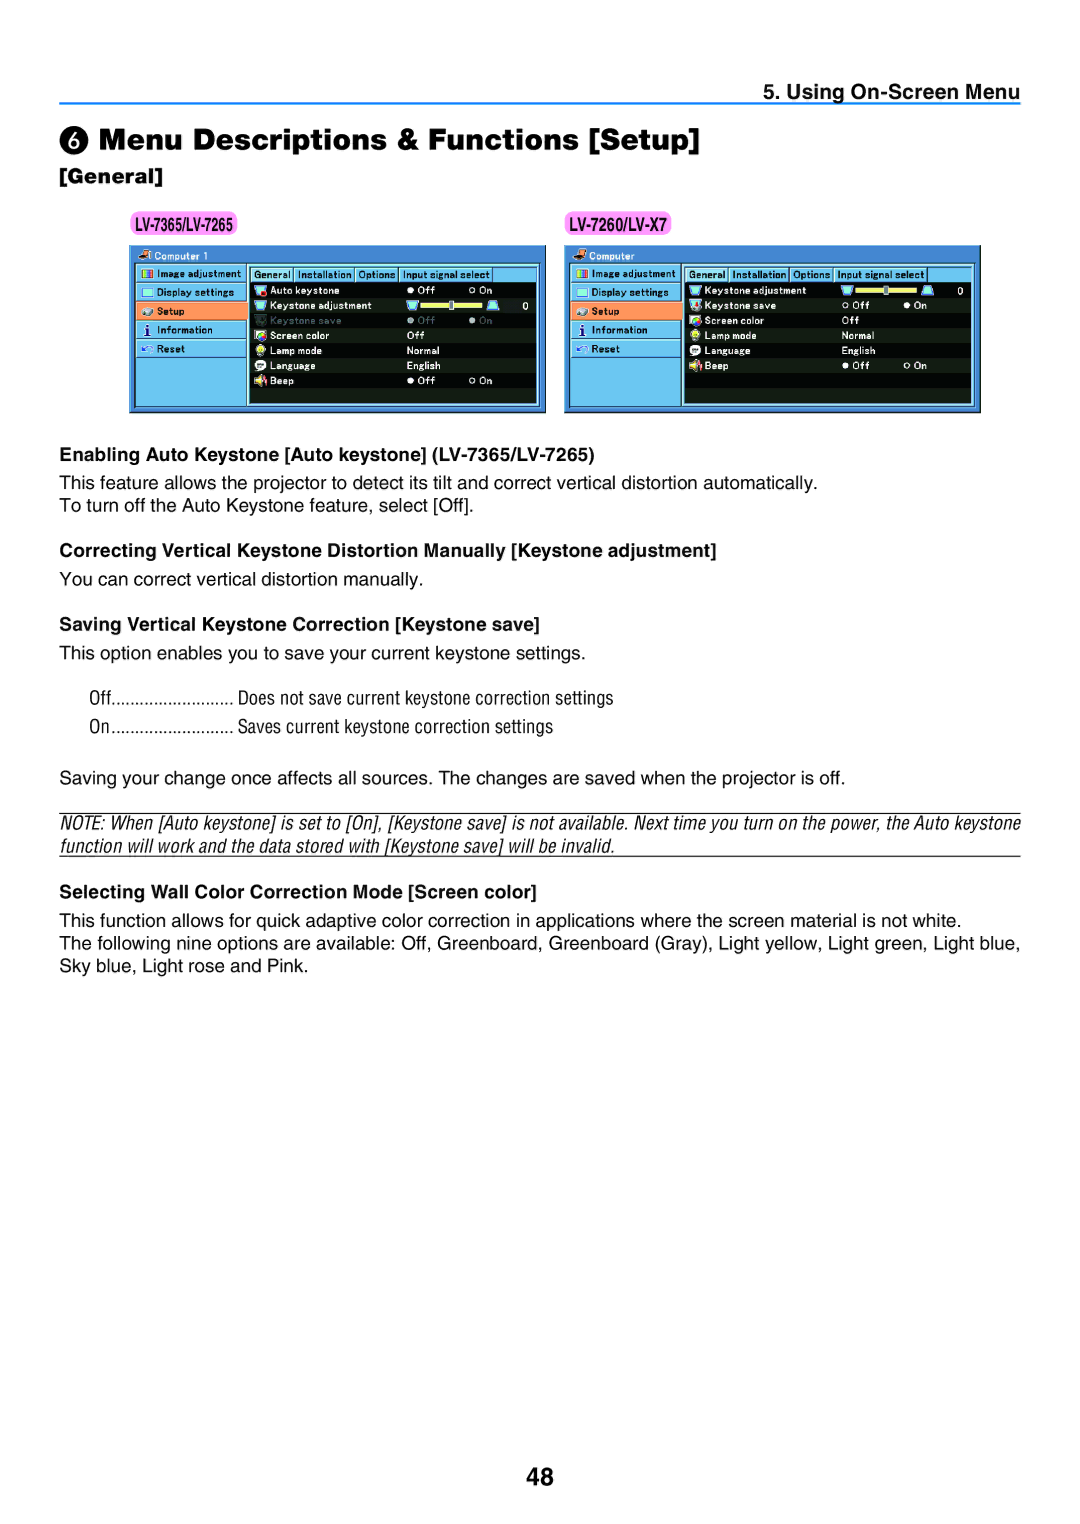 Canon user manual ❻ Menu Descriptions & Functions Setup, General, Enabling Auto Keystone Auto keystone LV-7365/LV-7265 